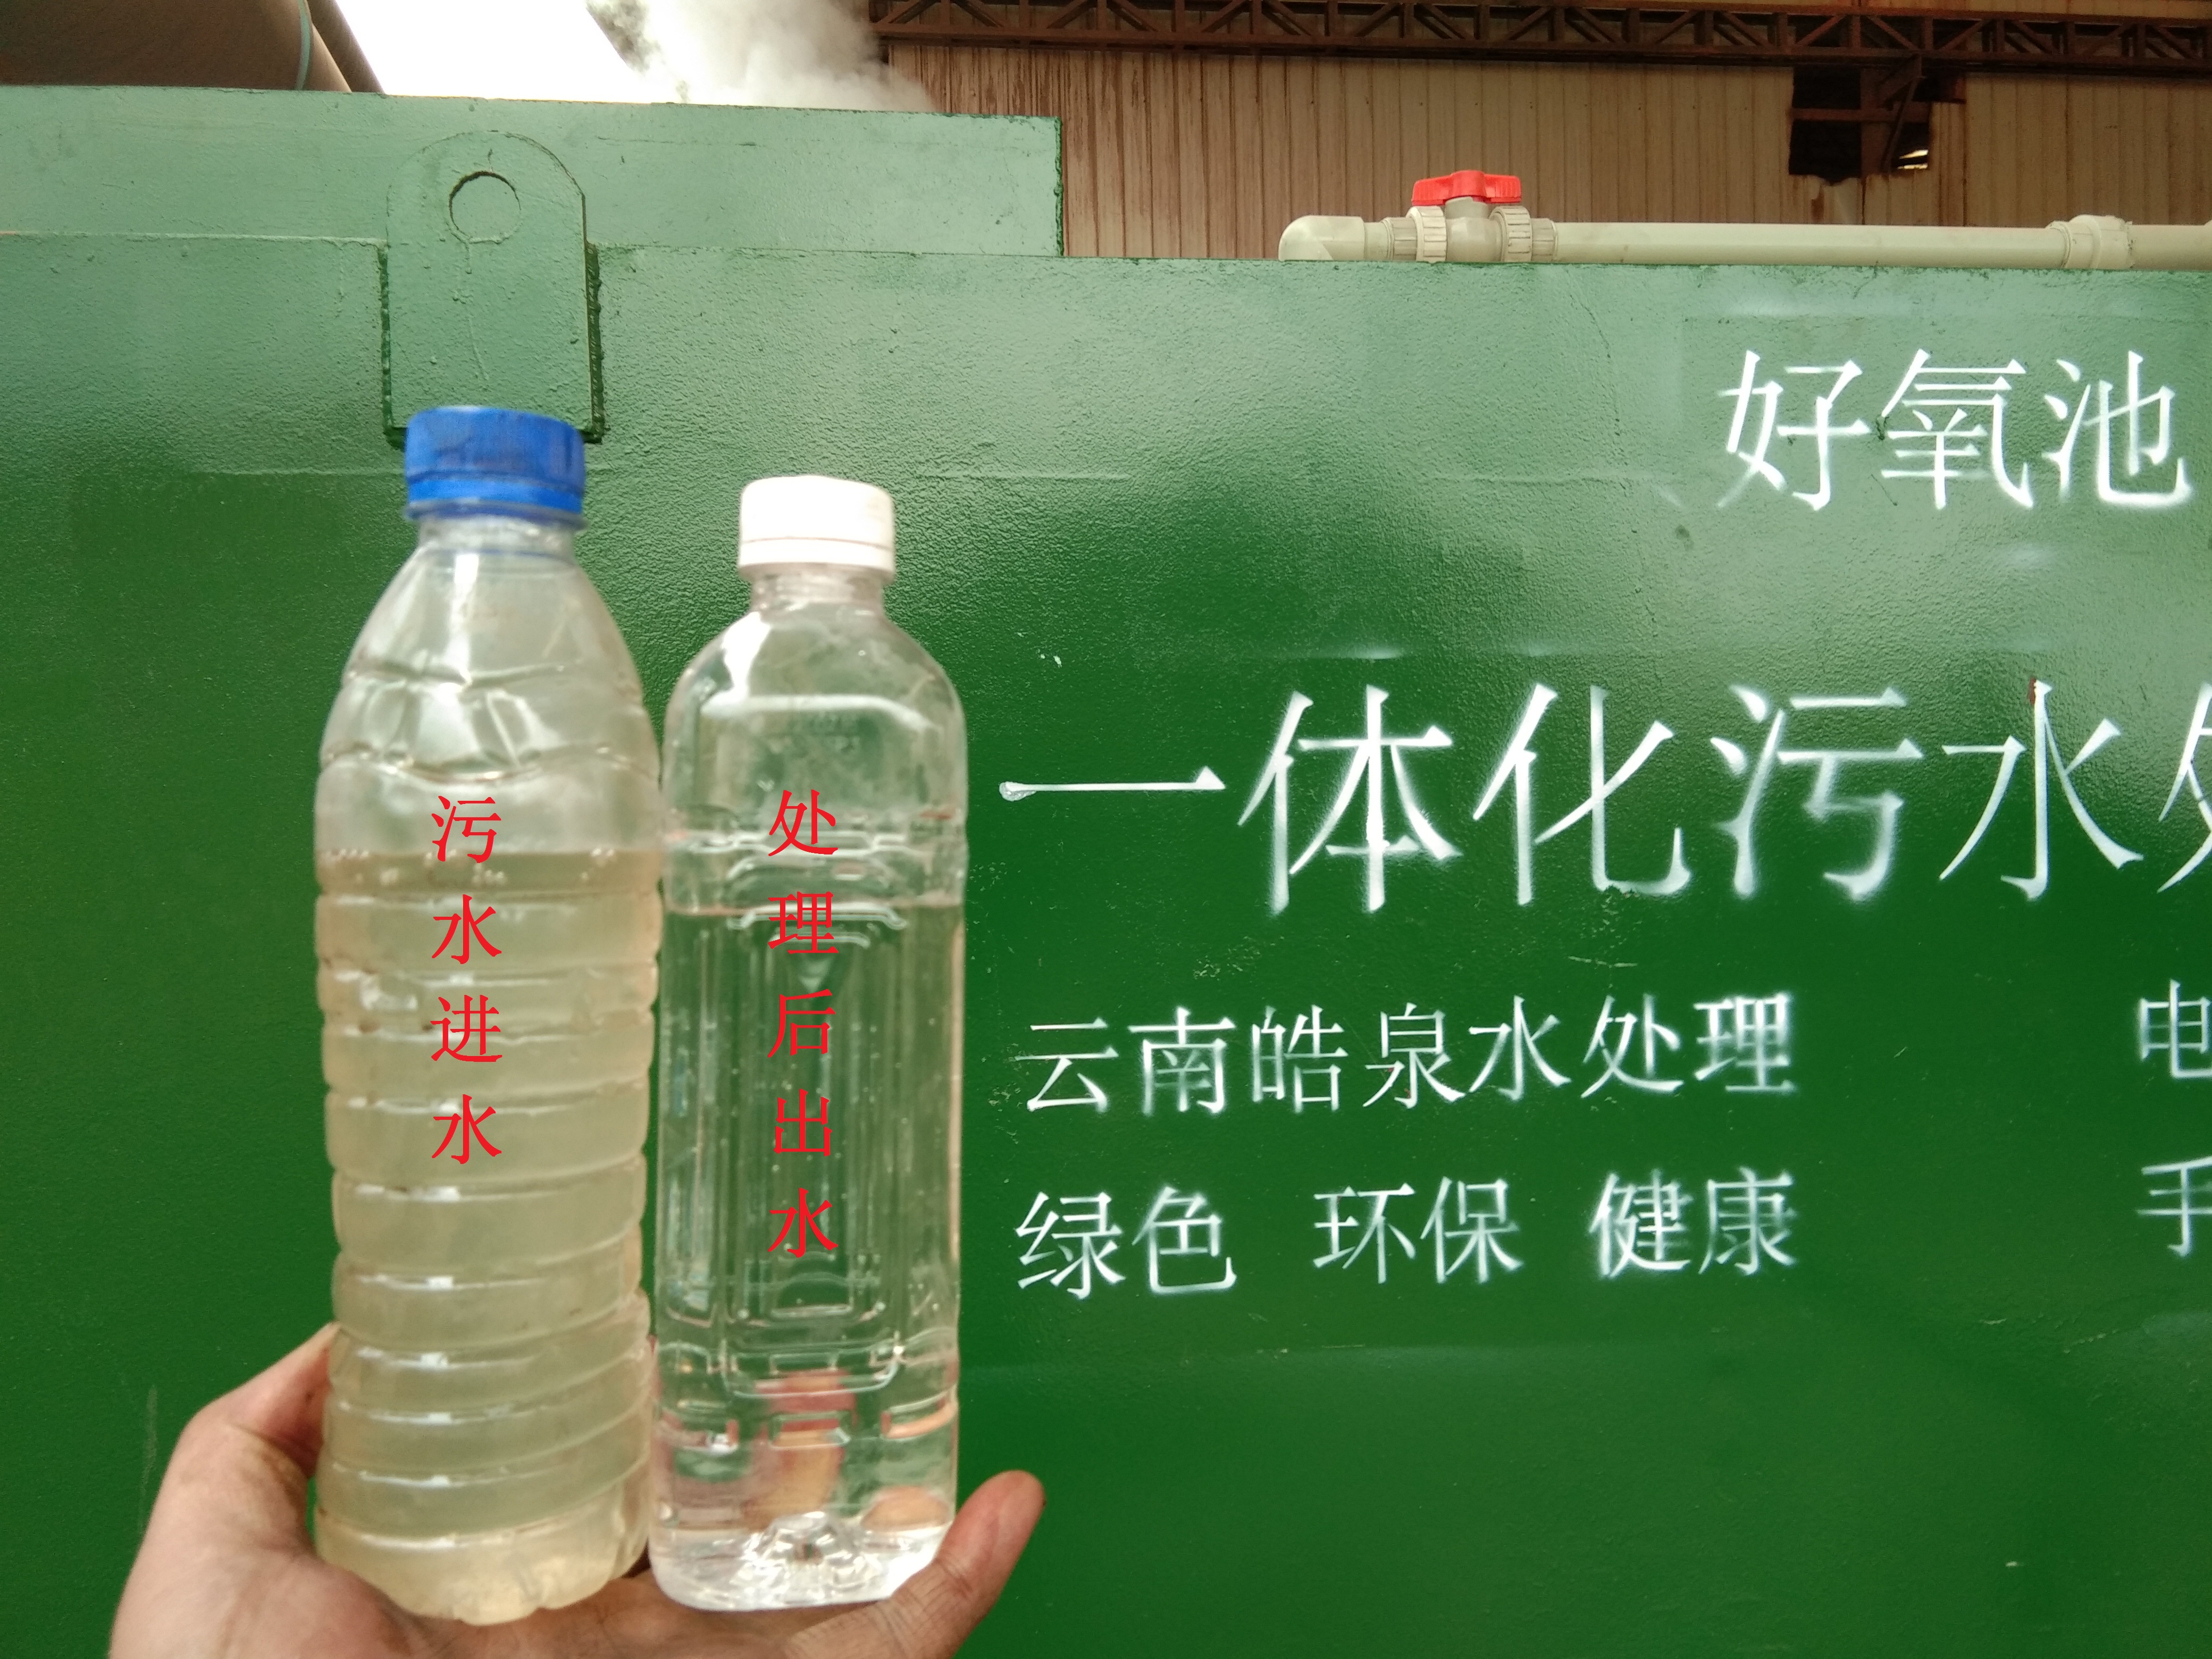 一体化MBR膜污水处理设备应用在宾川县康氏灰陶建材有限公司